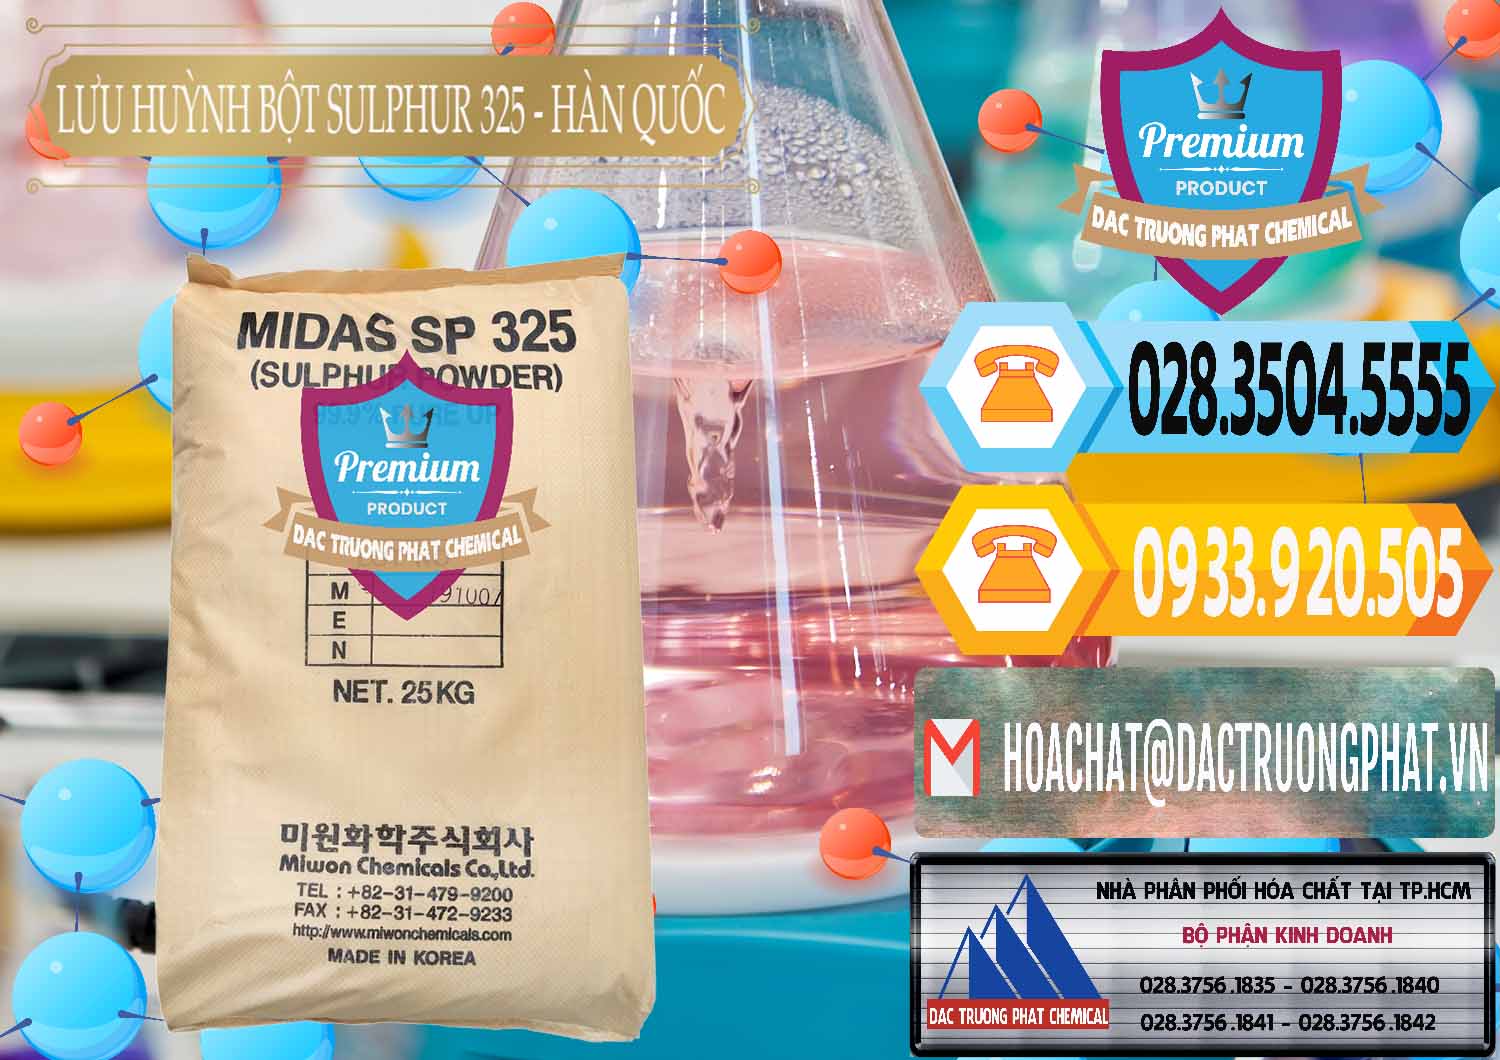 Công ty bán ( phân phối ) Lưu huỳnh Bột - Sulfur Powder Midas SP 325 Hàn Quốc Korea - 0198 - Nơi chuyên cung ứng _ phân phối hóa chất tại TP.HCM - hoachattayrua.net